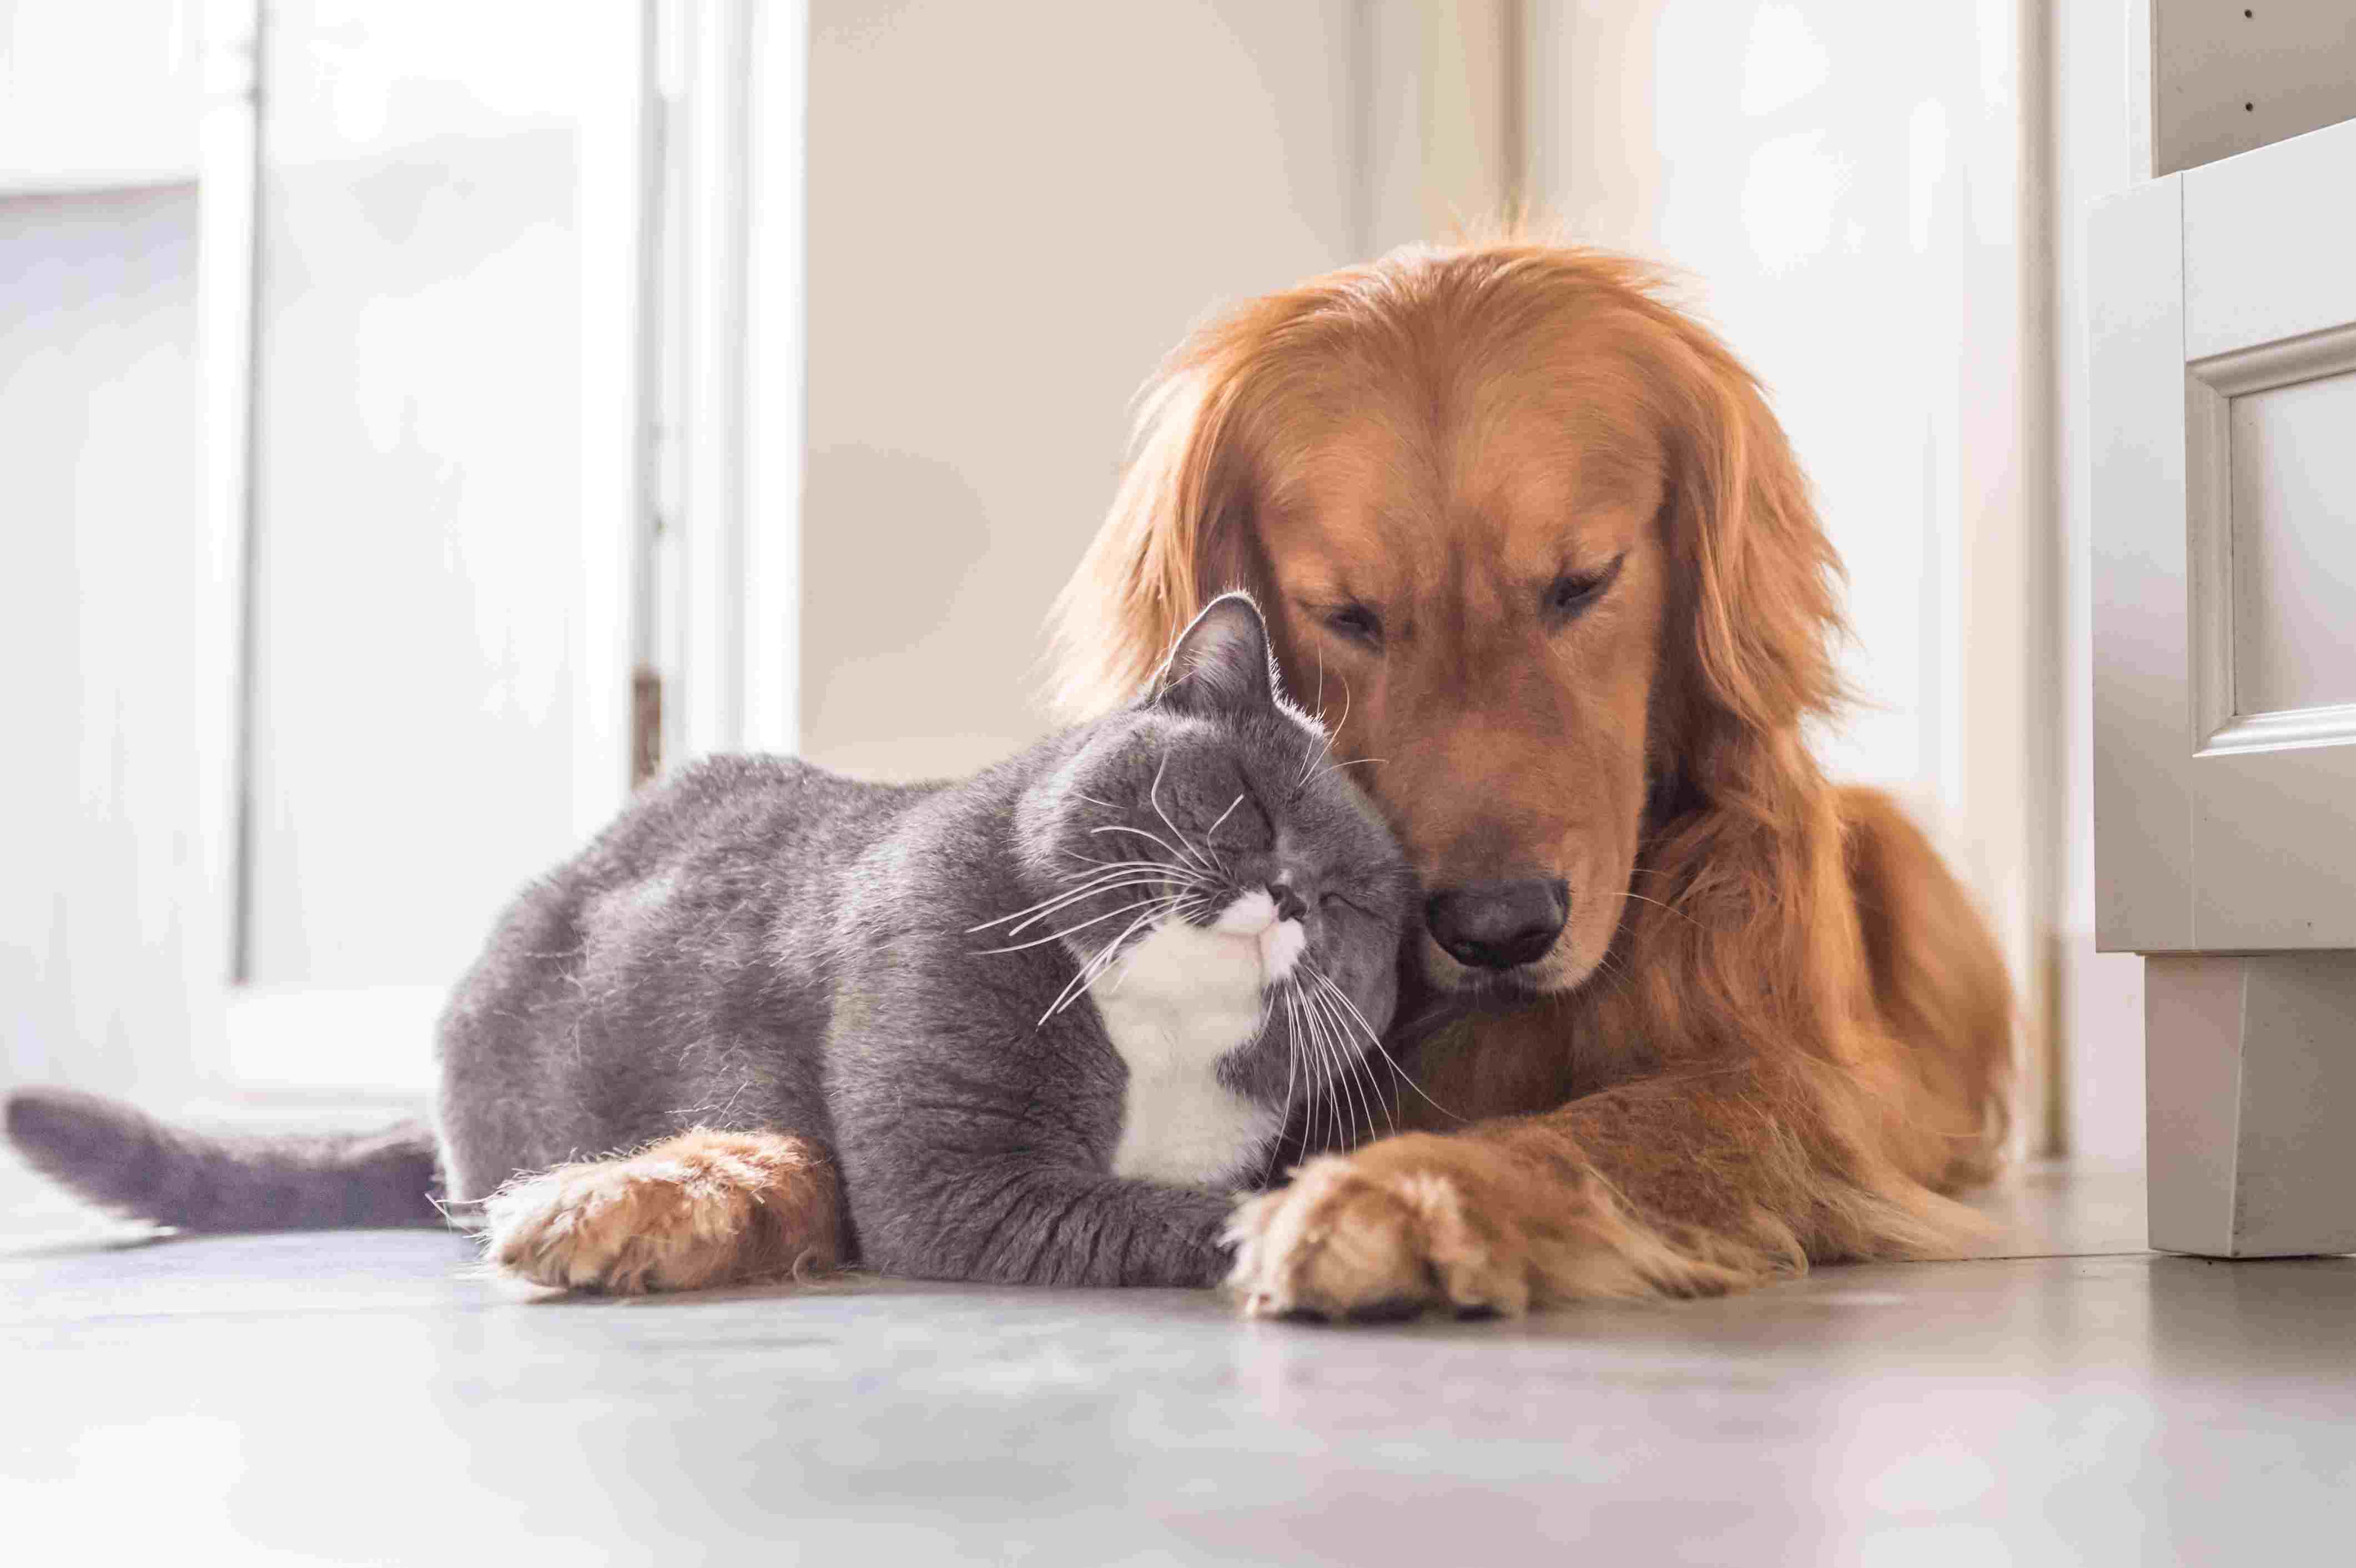 Chegou um pet novo por aí? Confira alguns truques para cães e gatos se darem bem e construírem uma relação de amizade (COM VÍDEO)